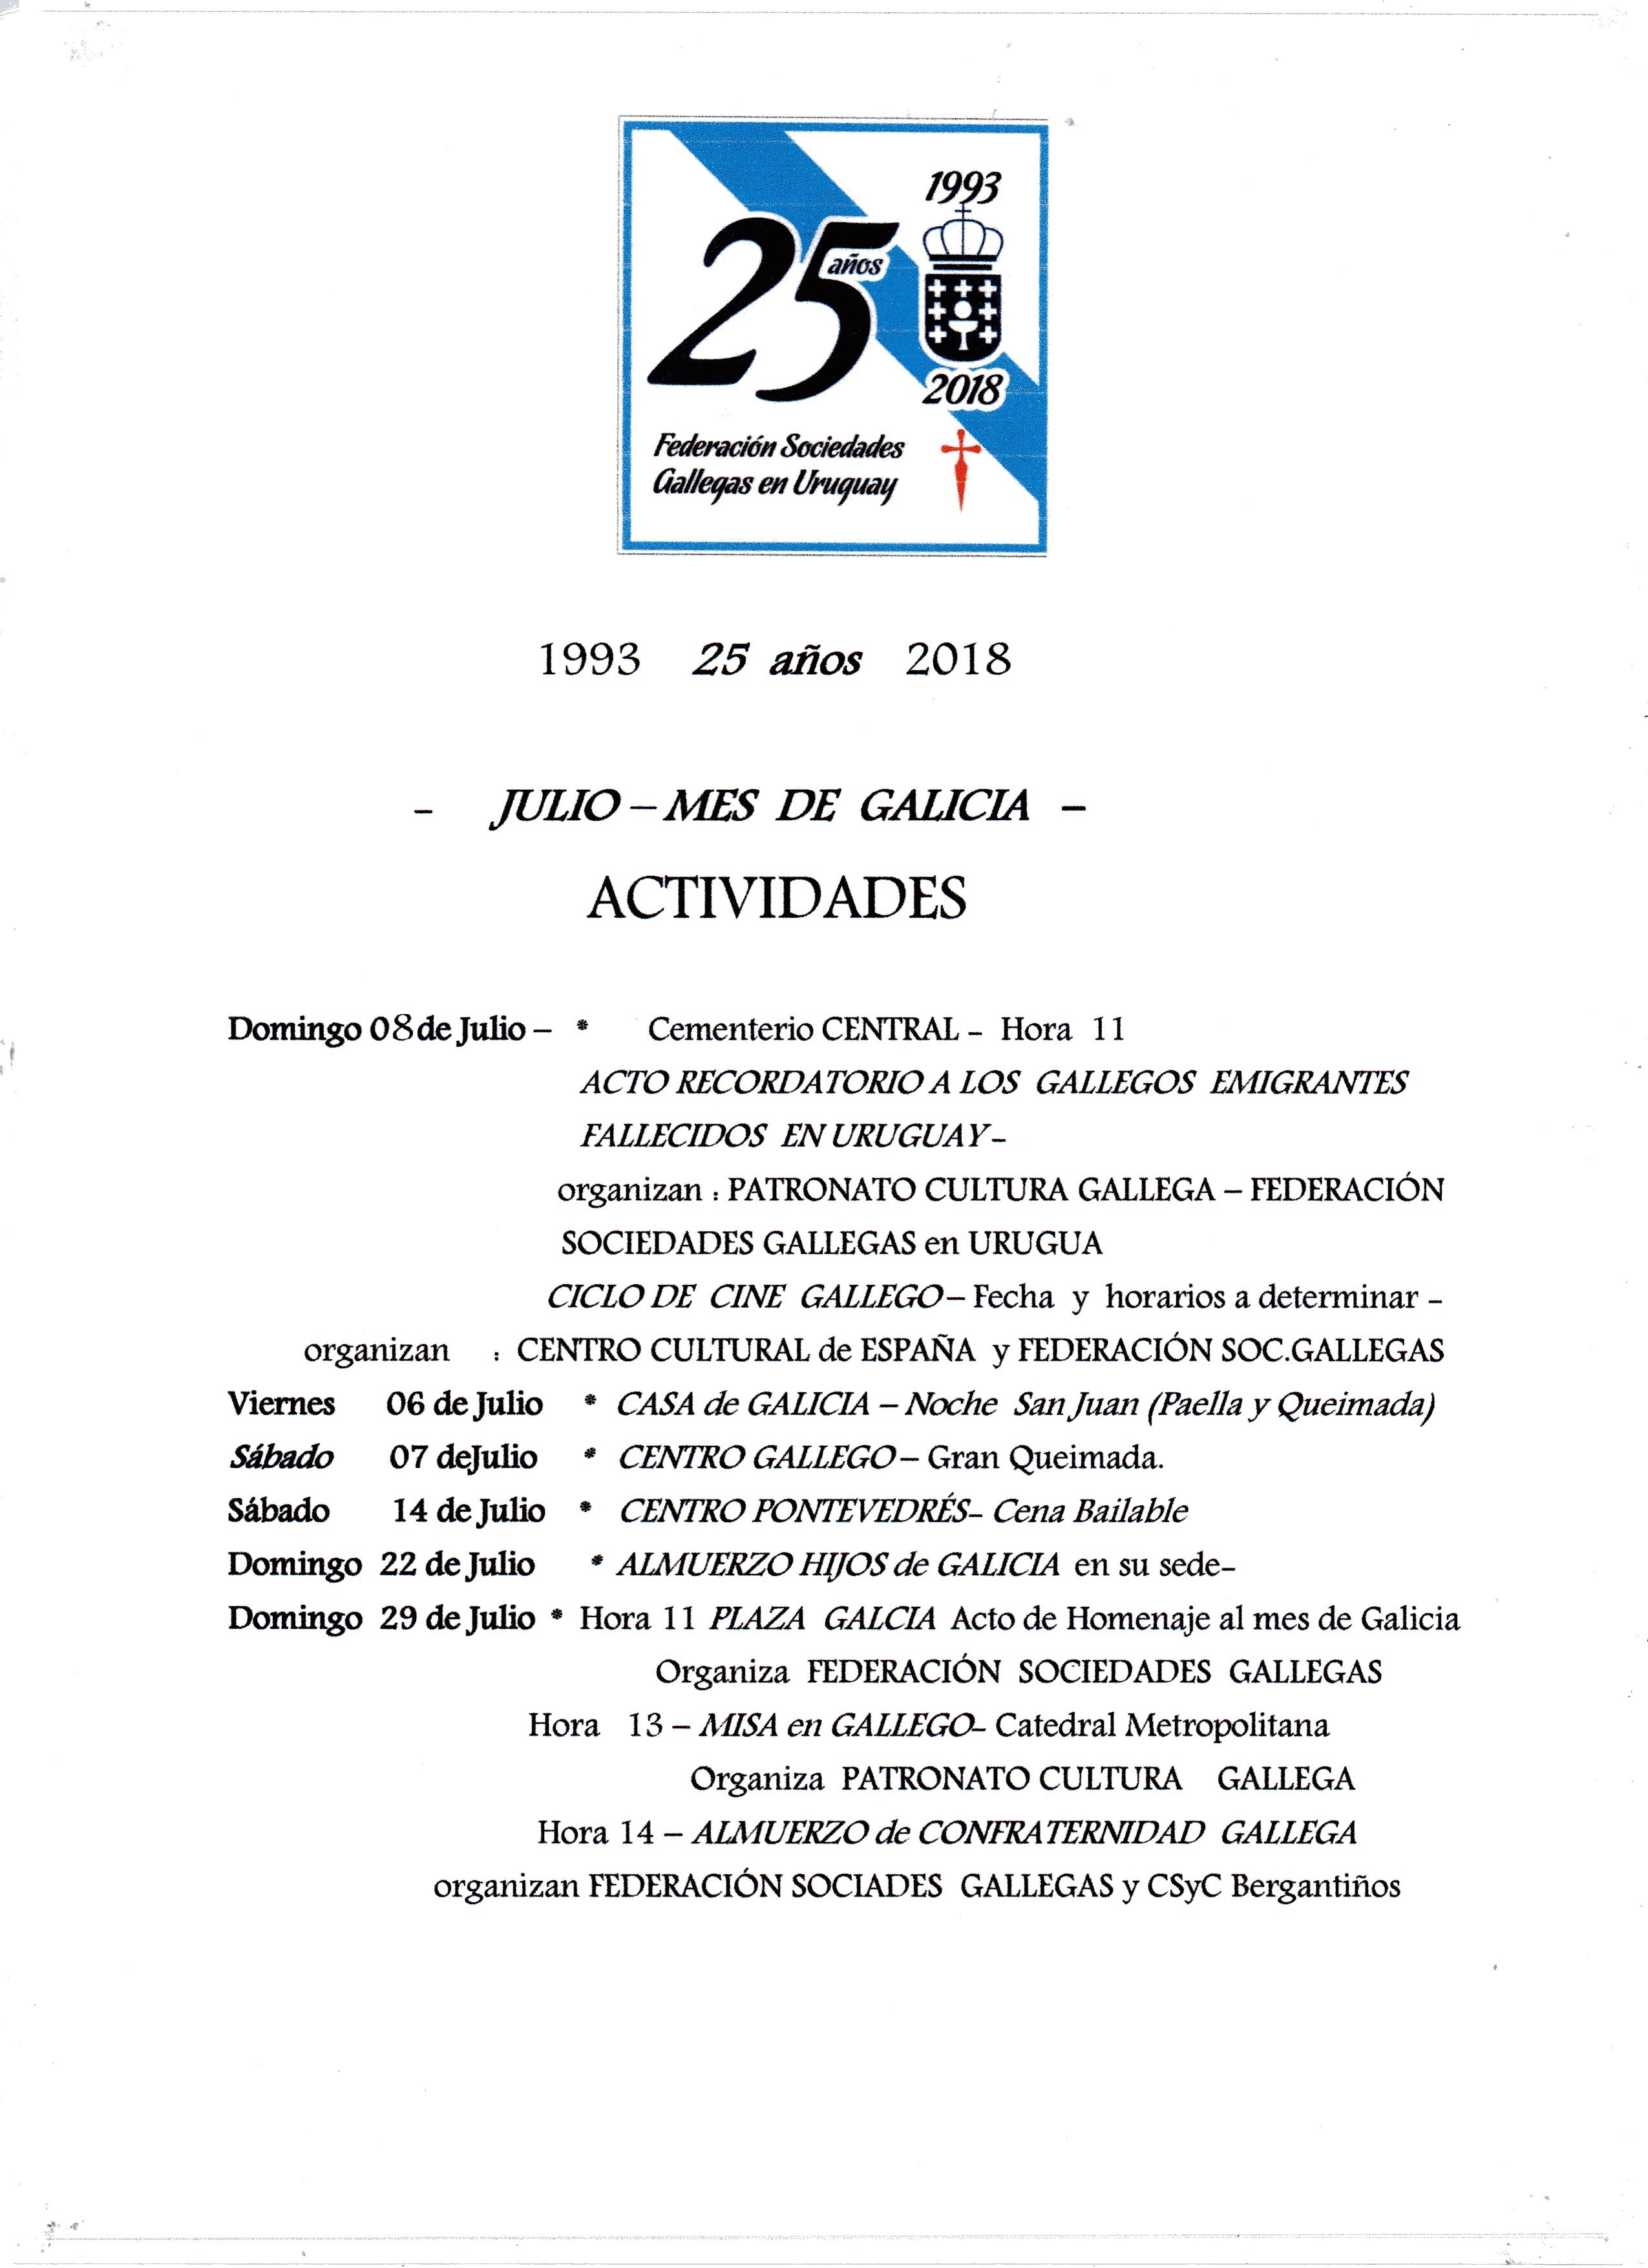 Calendario de actividades de la Federación de Sociedades Gallegas para Julio 2018